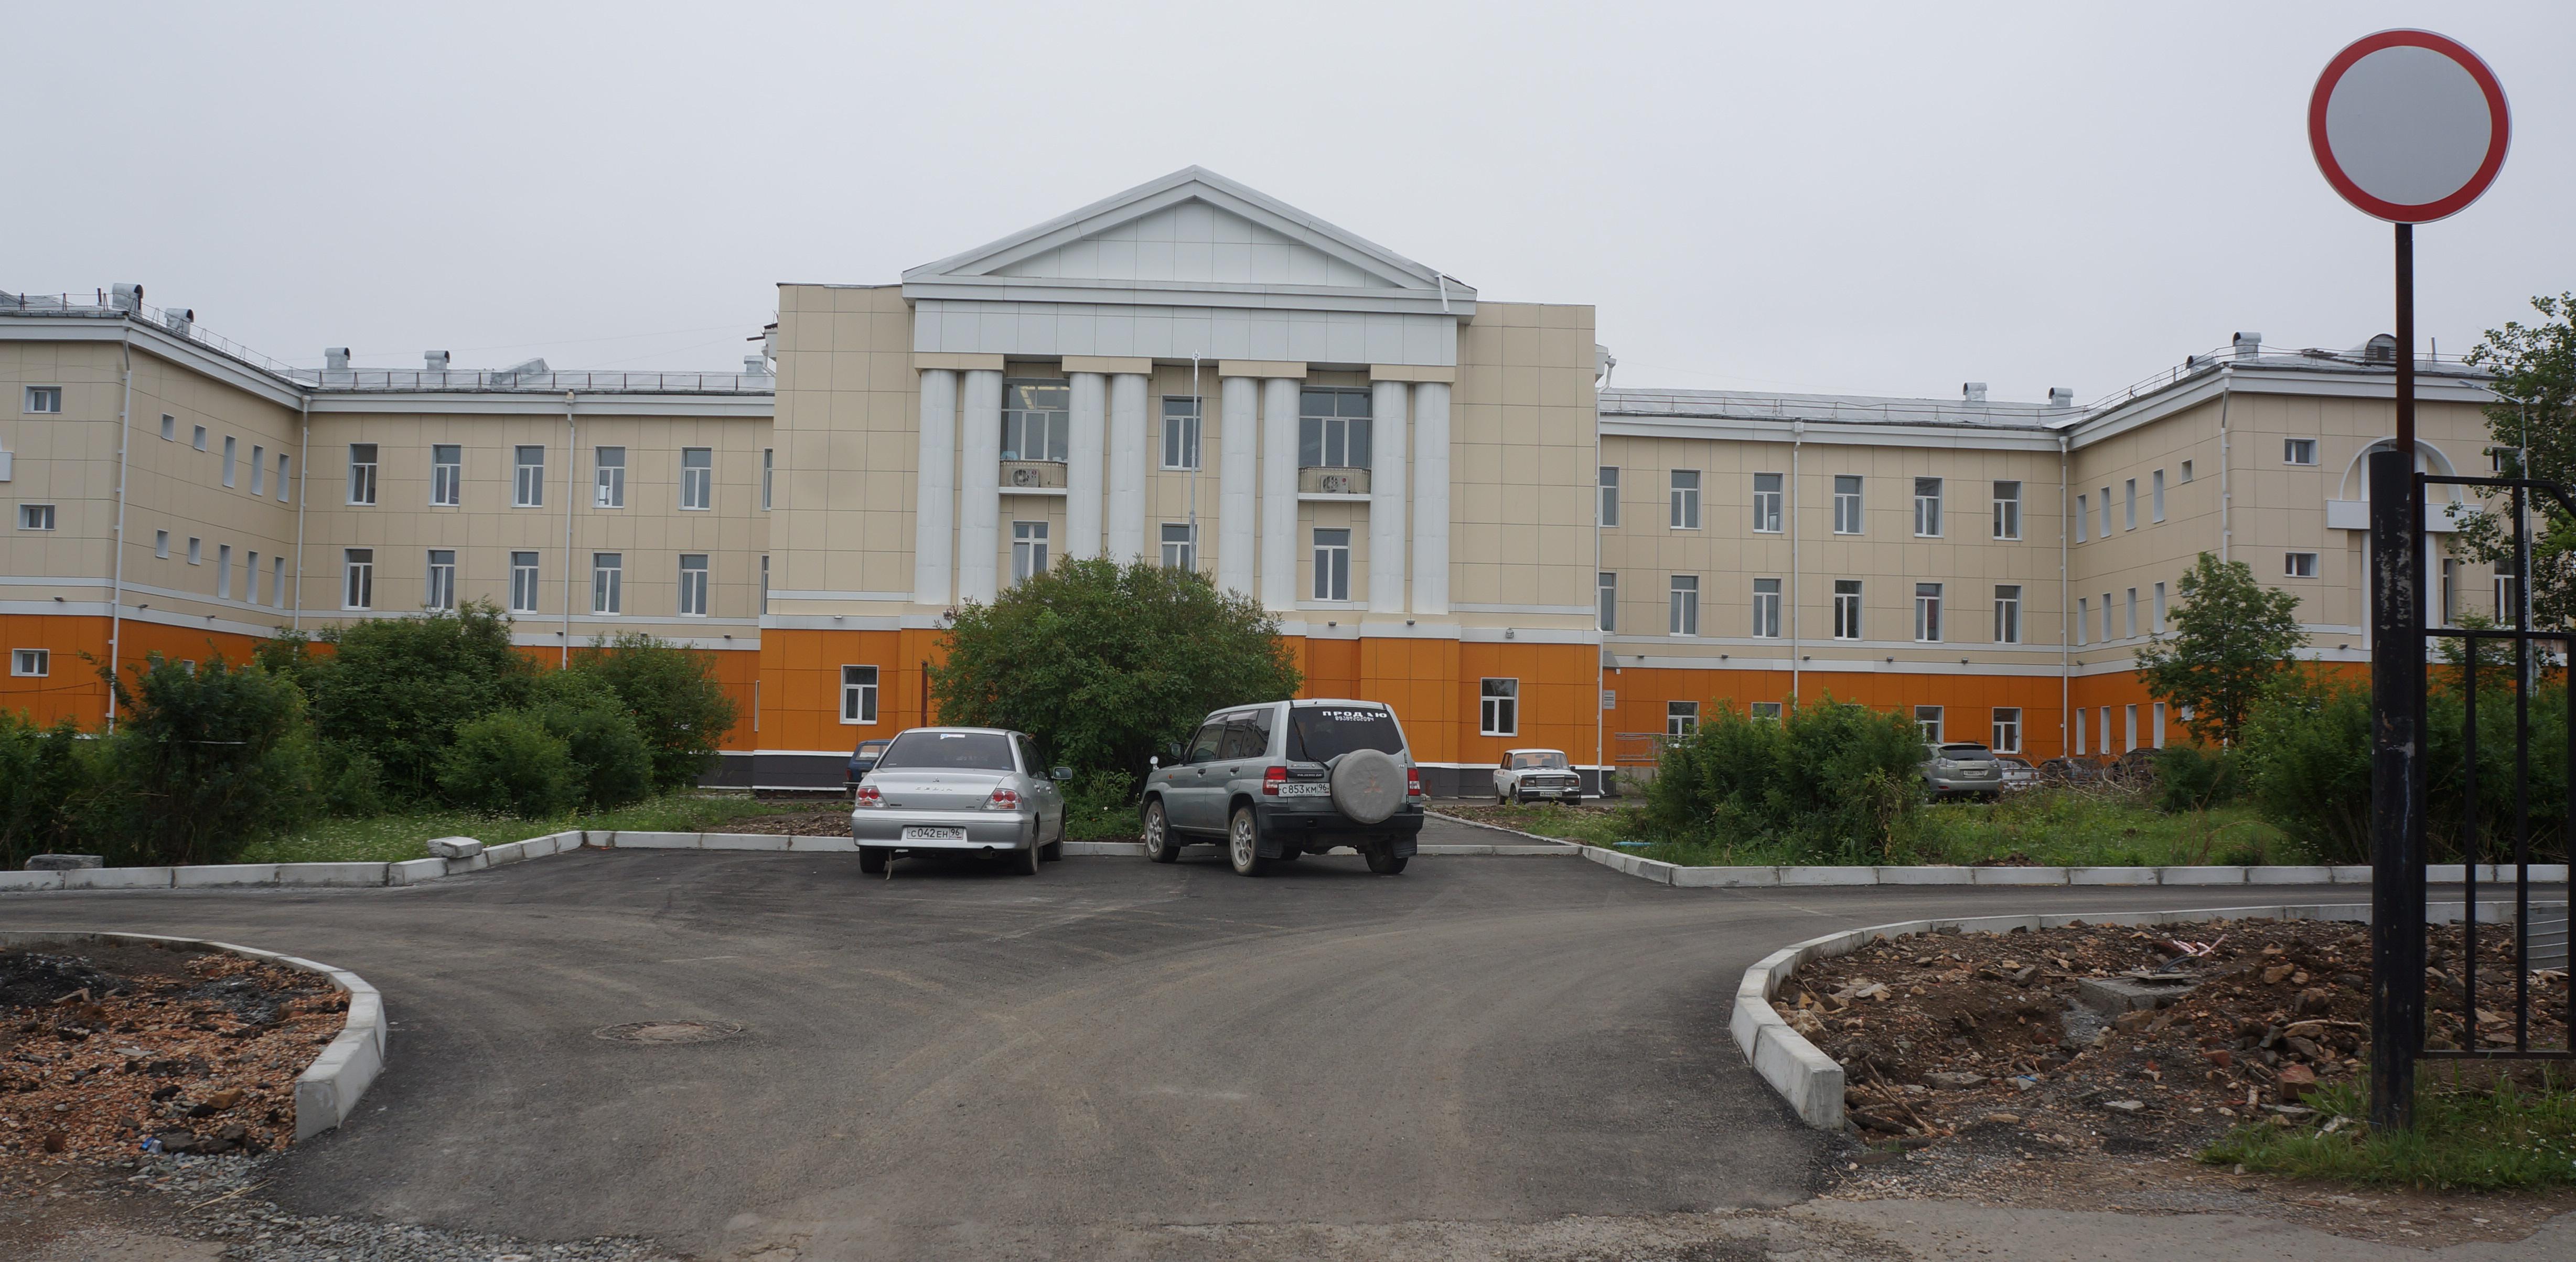 Скандал на кладбище: в больнице Карпинска началось внутреннее расследование с участием прокуратуры и СК